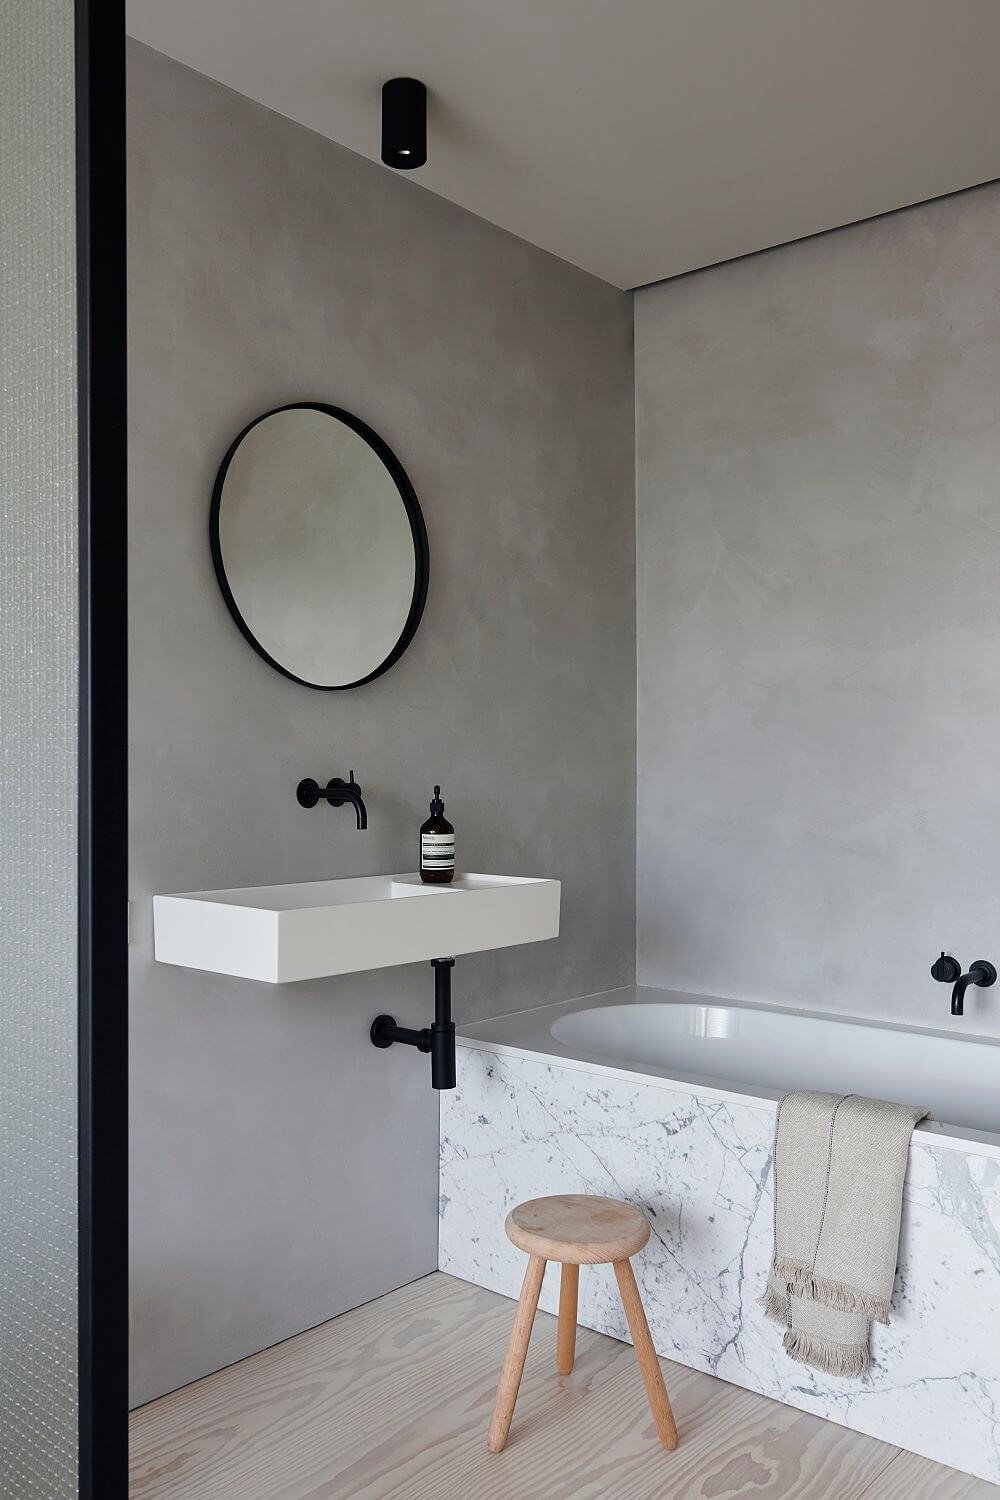 Lavabo blanco suspendido en cuarto de baño gris con grifería negra y bañera de mármol